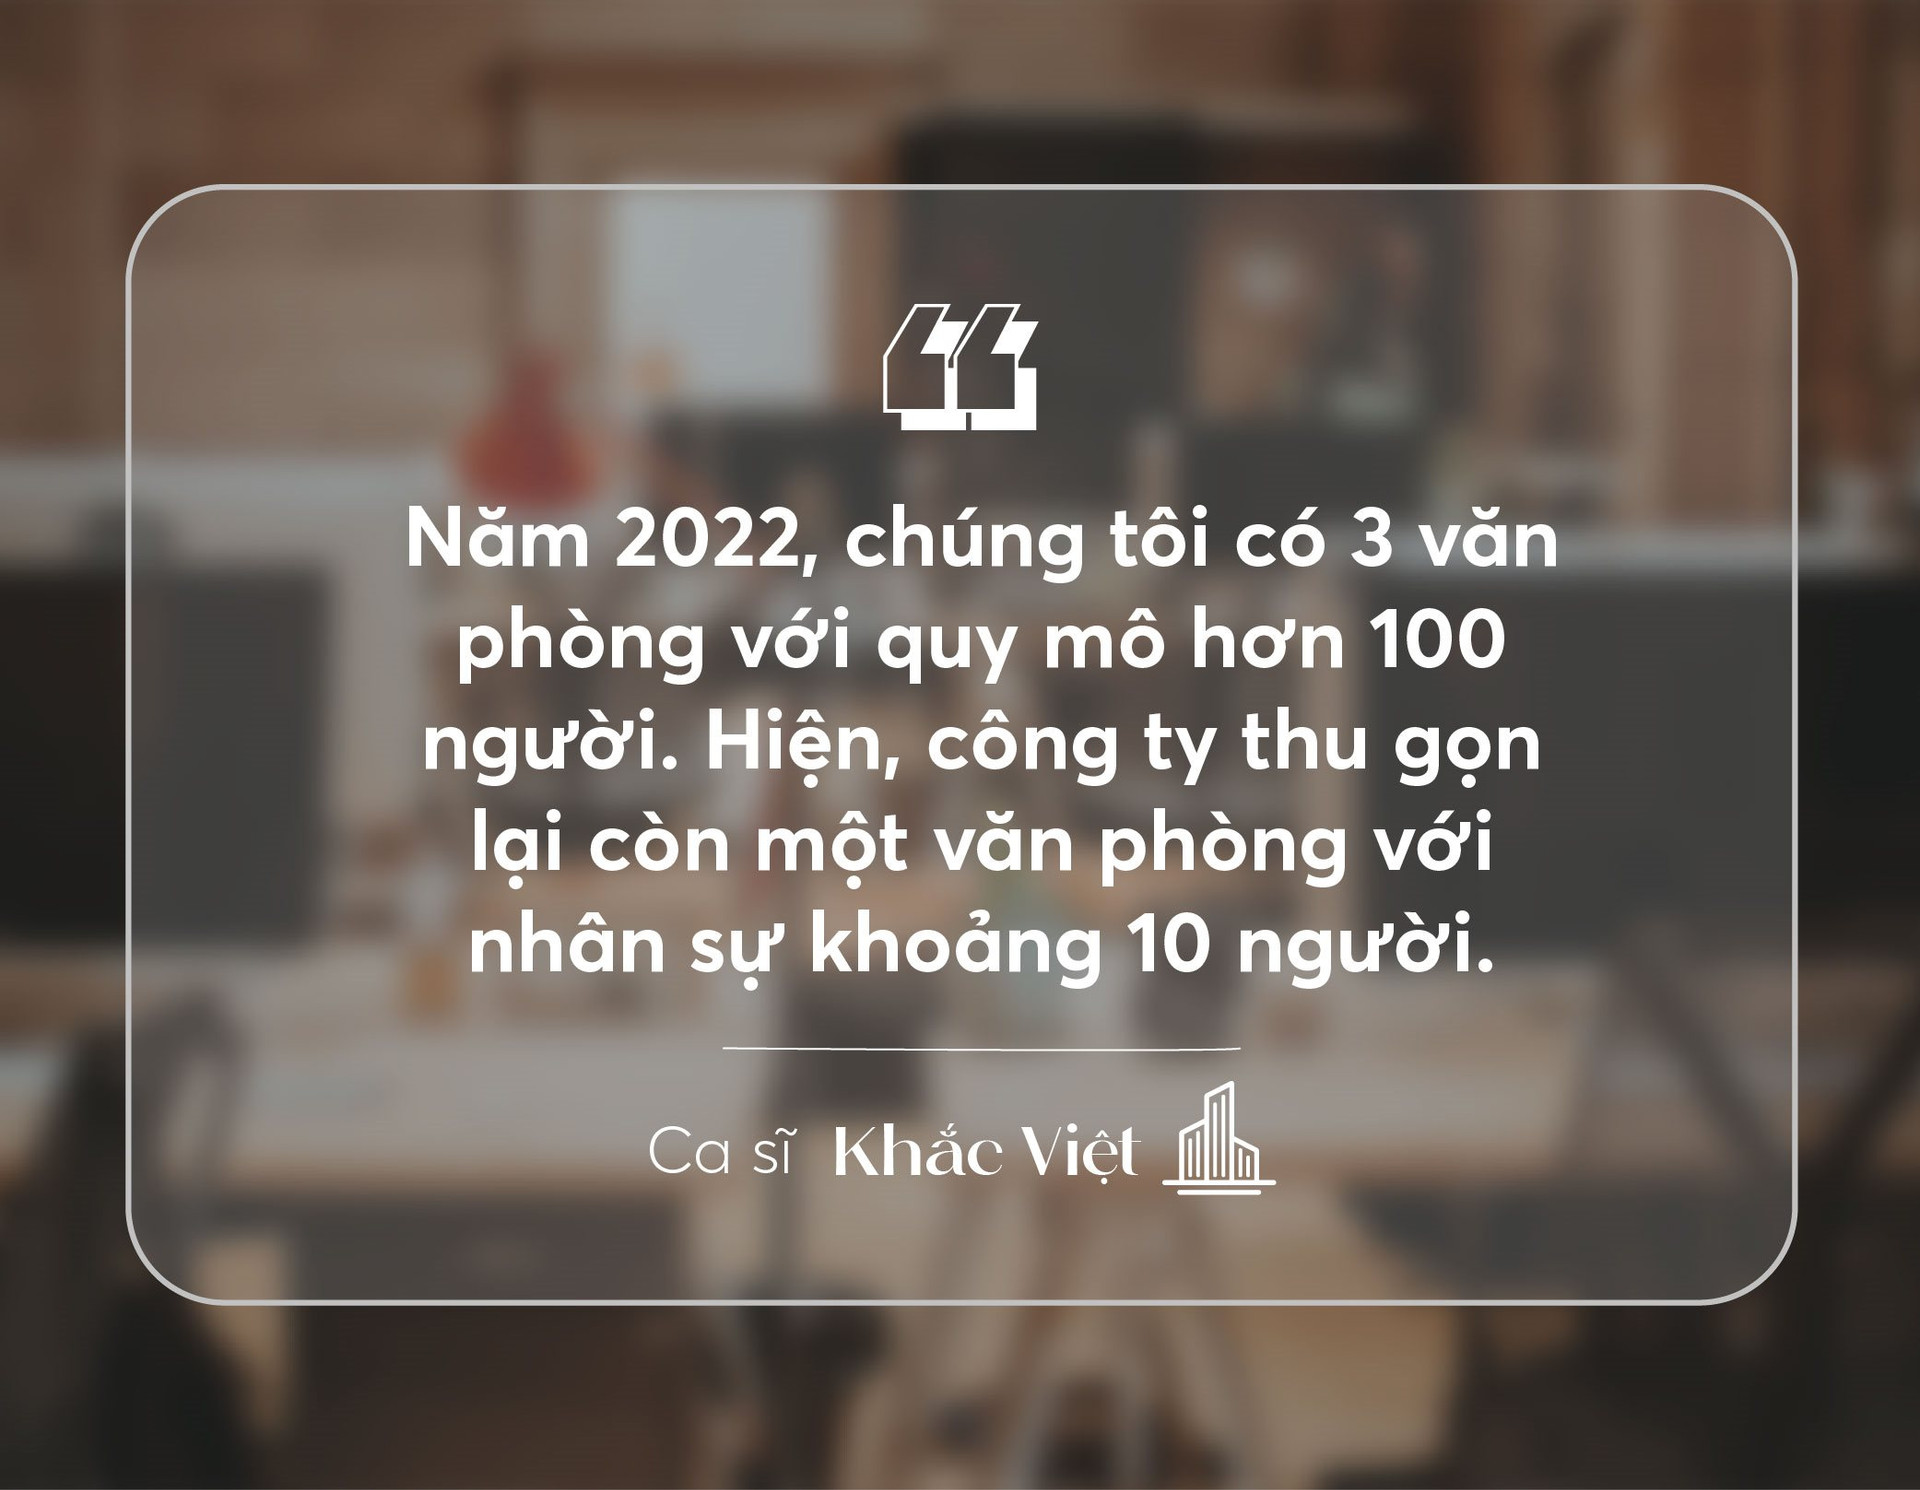 Ca sĩ Khắc Việt: “Khi thị trường bất động sản sôi động, anh đầu tư thắng, anh nói gì cũng sẽ hay” - Ảnh 4.